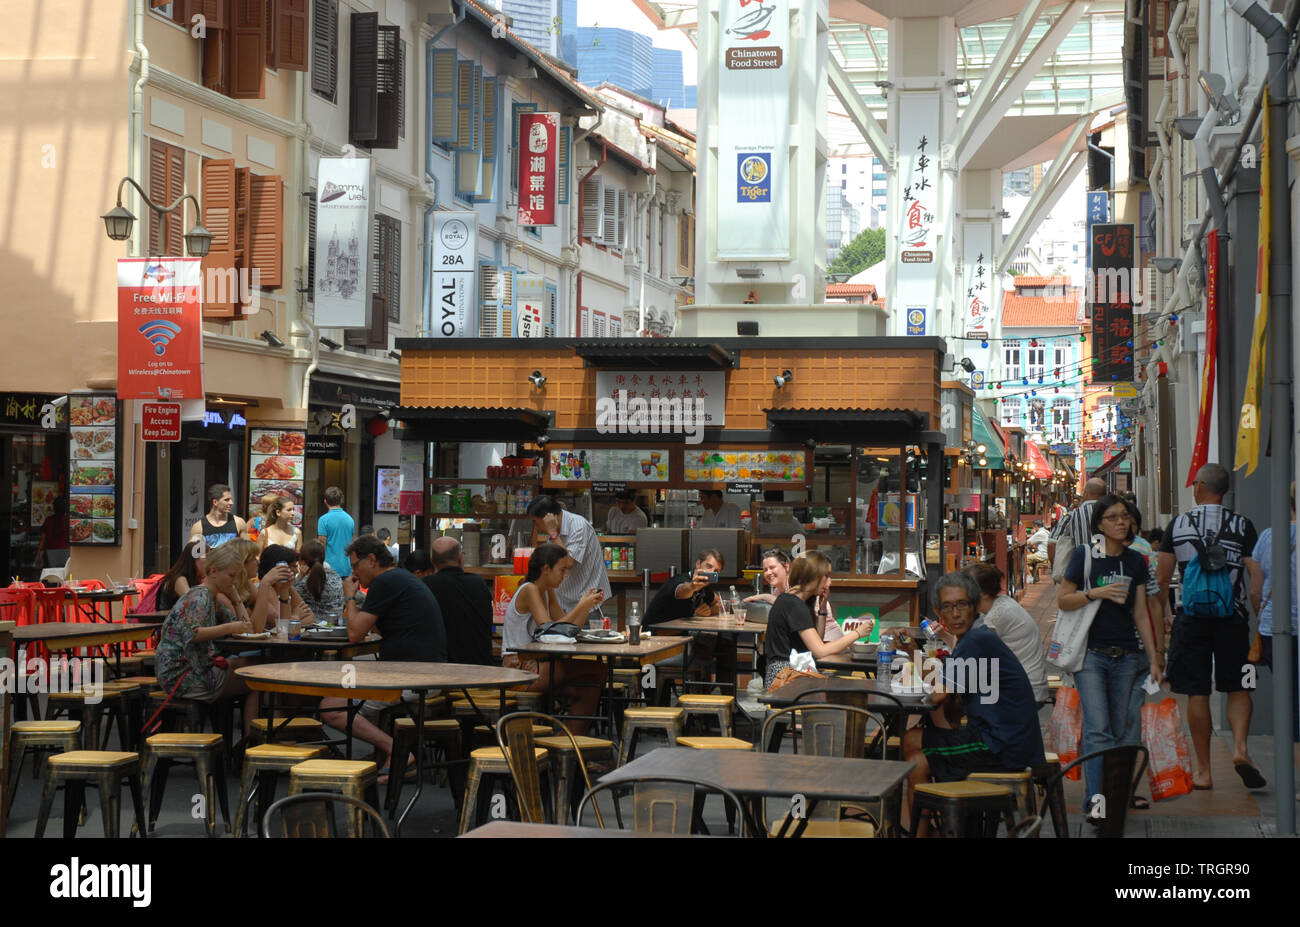 Food street, una vivace e trafficata area al coperto con posti a sedere ai tavoli godendo di bibite e cibo, Chinatown, Singapore Foto Stock